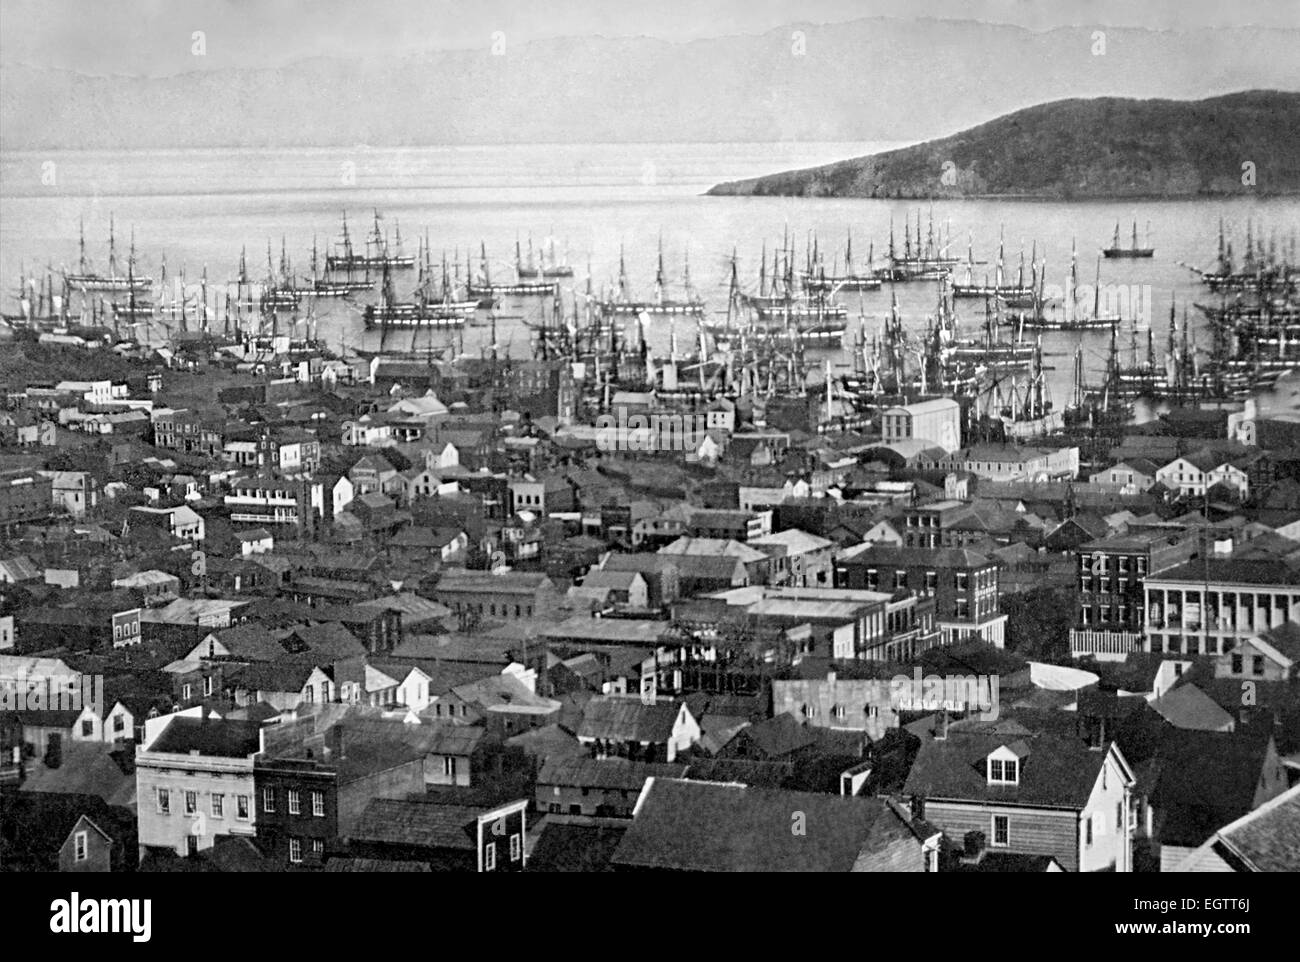 Hafen von San Francisco Yerba Buena Cove in 1850 oder 1851 mit Yerba Buena Island und Berkeley Hills, im Hintergrund während des kalifornischen Goldrausches. Stockfoto